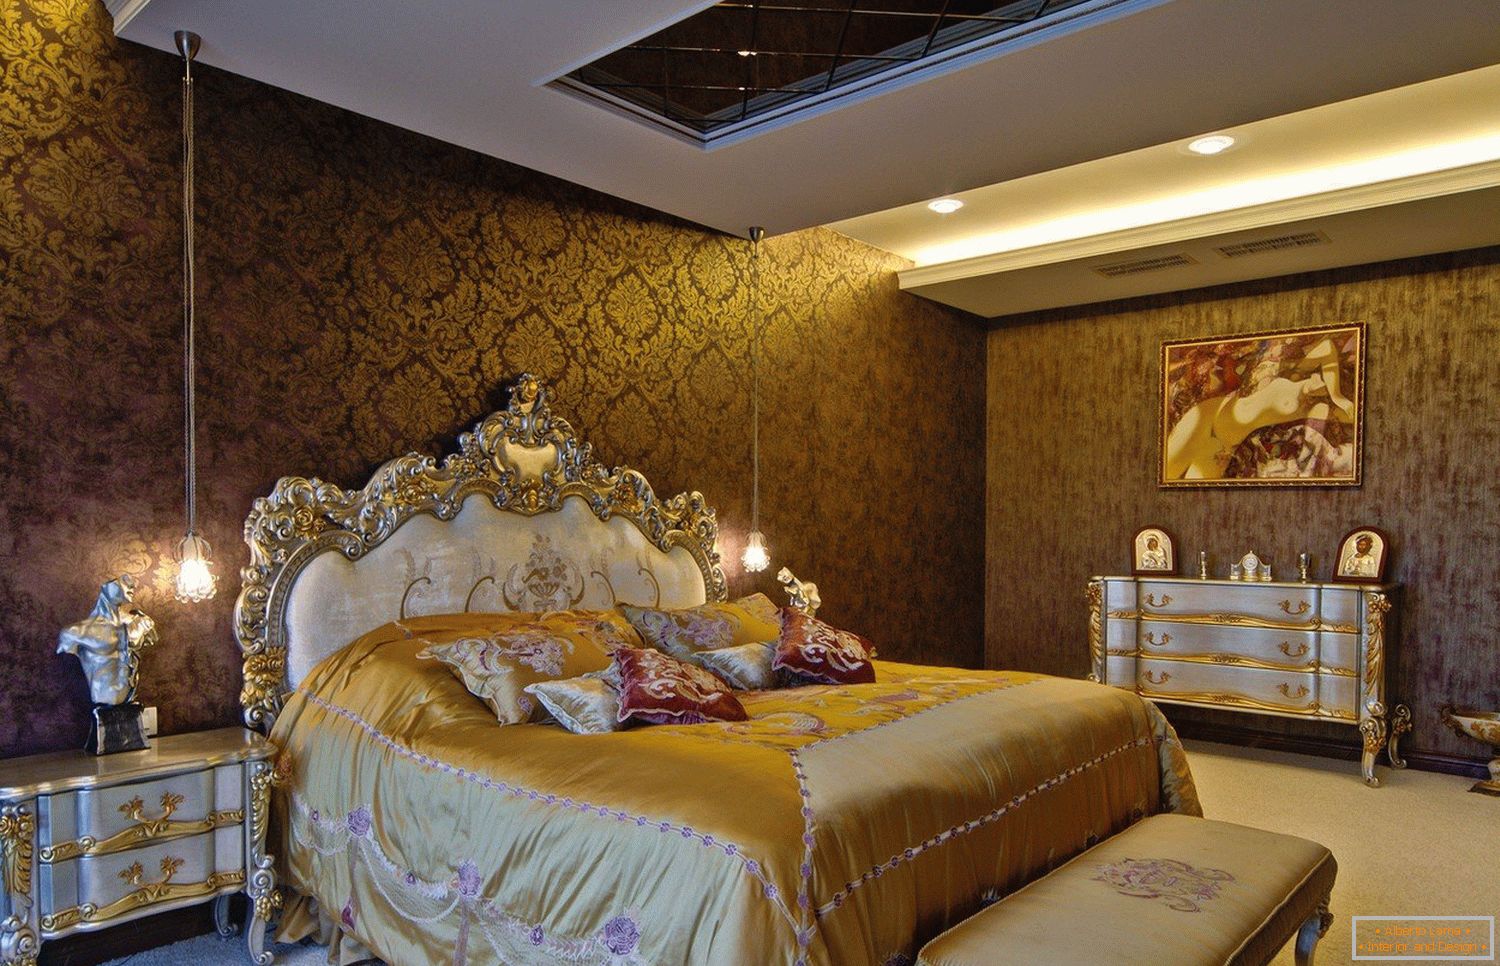 Golden Tones in Bedroom Design